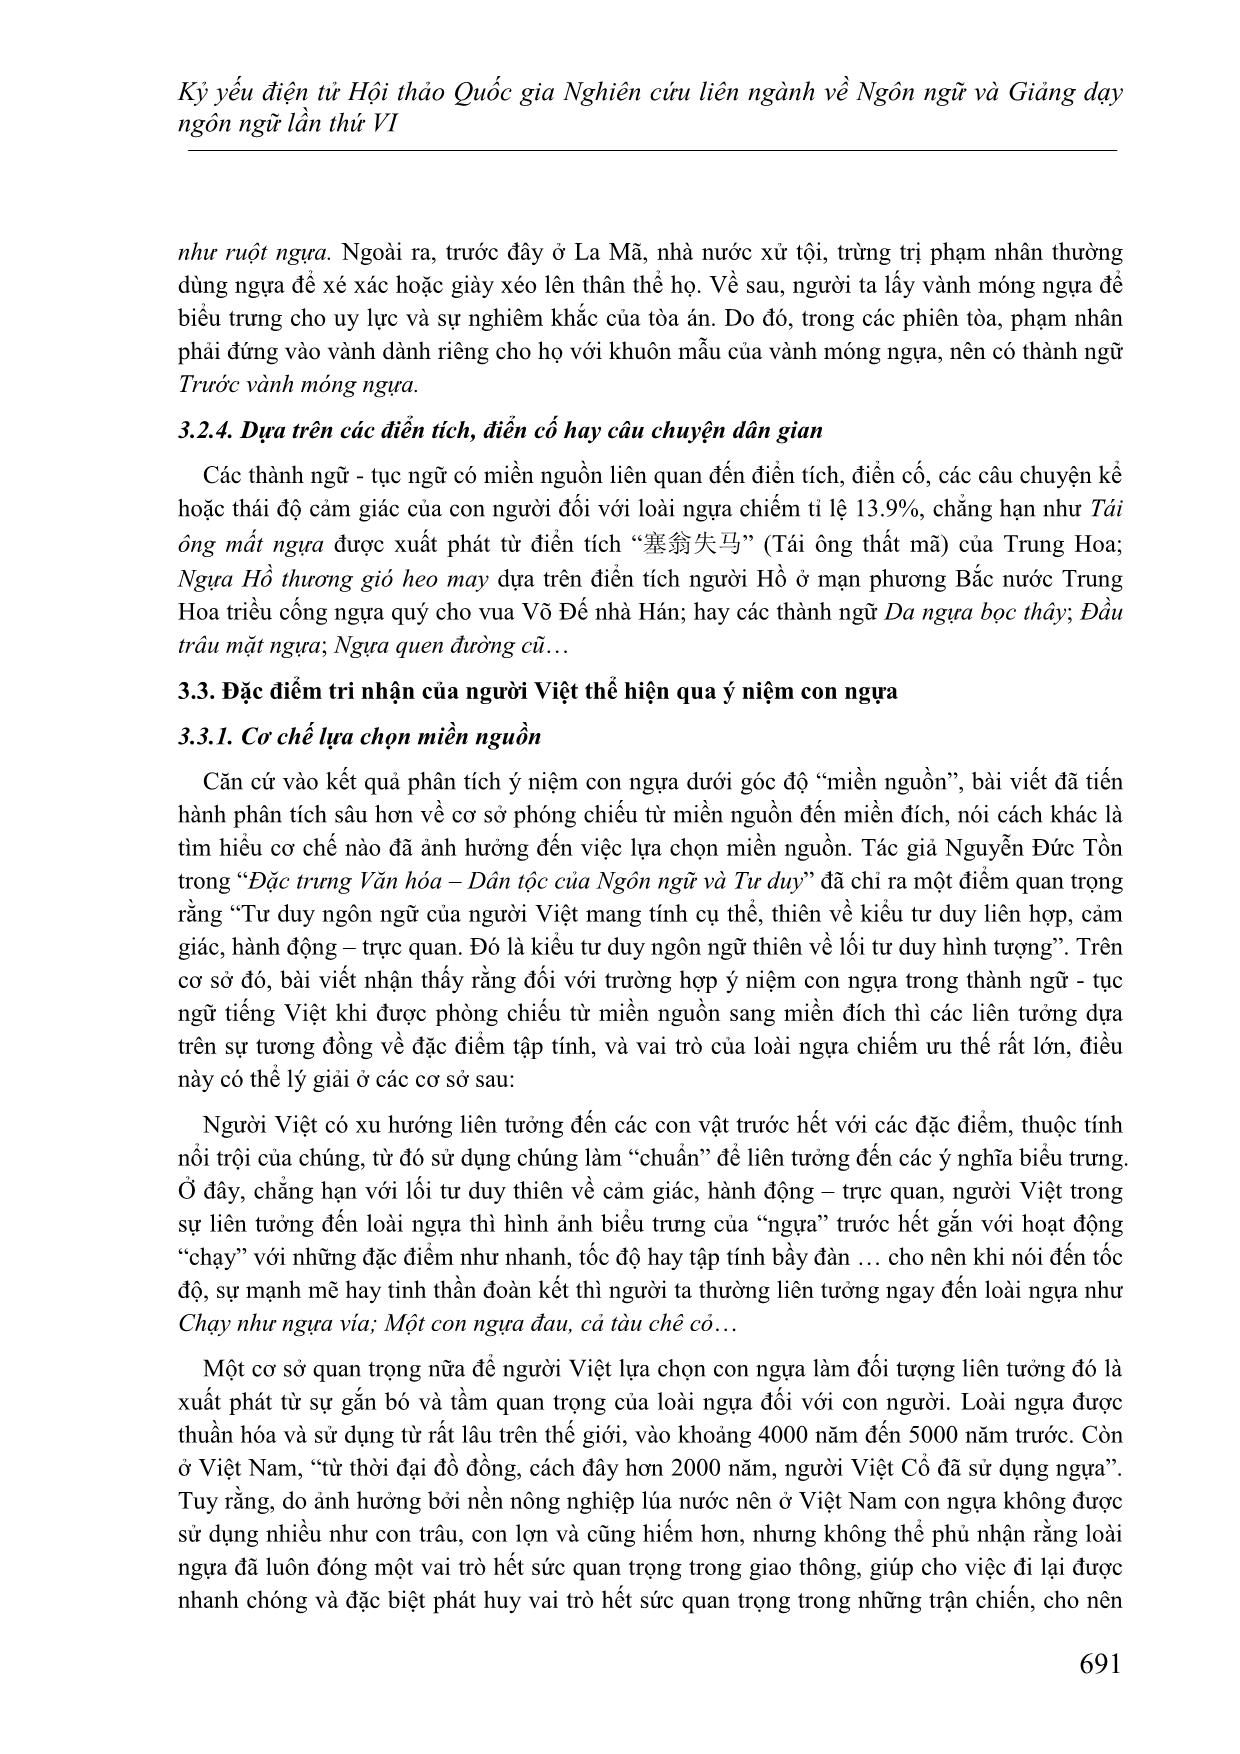 Một cách kiến giải về hình ảnh con ngựa trong thành ngữ-Tục ngữ Tiếng Việt dưới góc nhìn ngôn ngữ học tri nhận trang 5